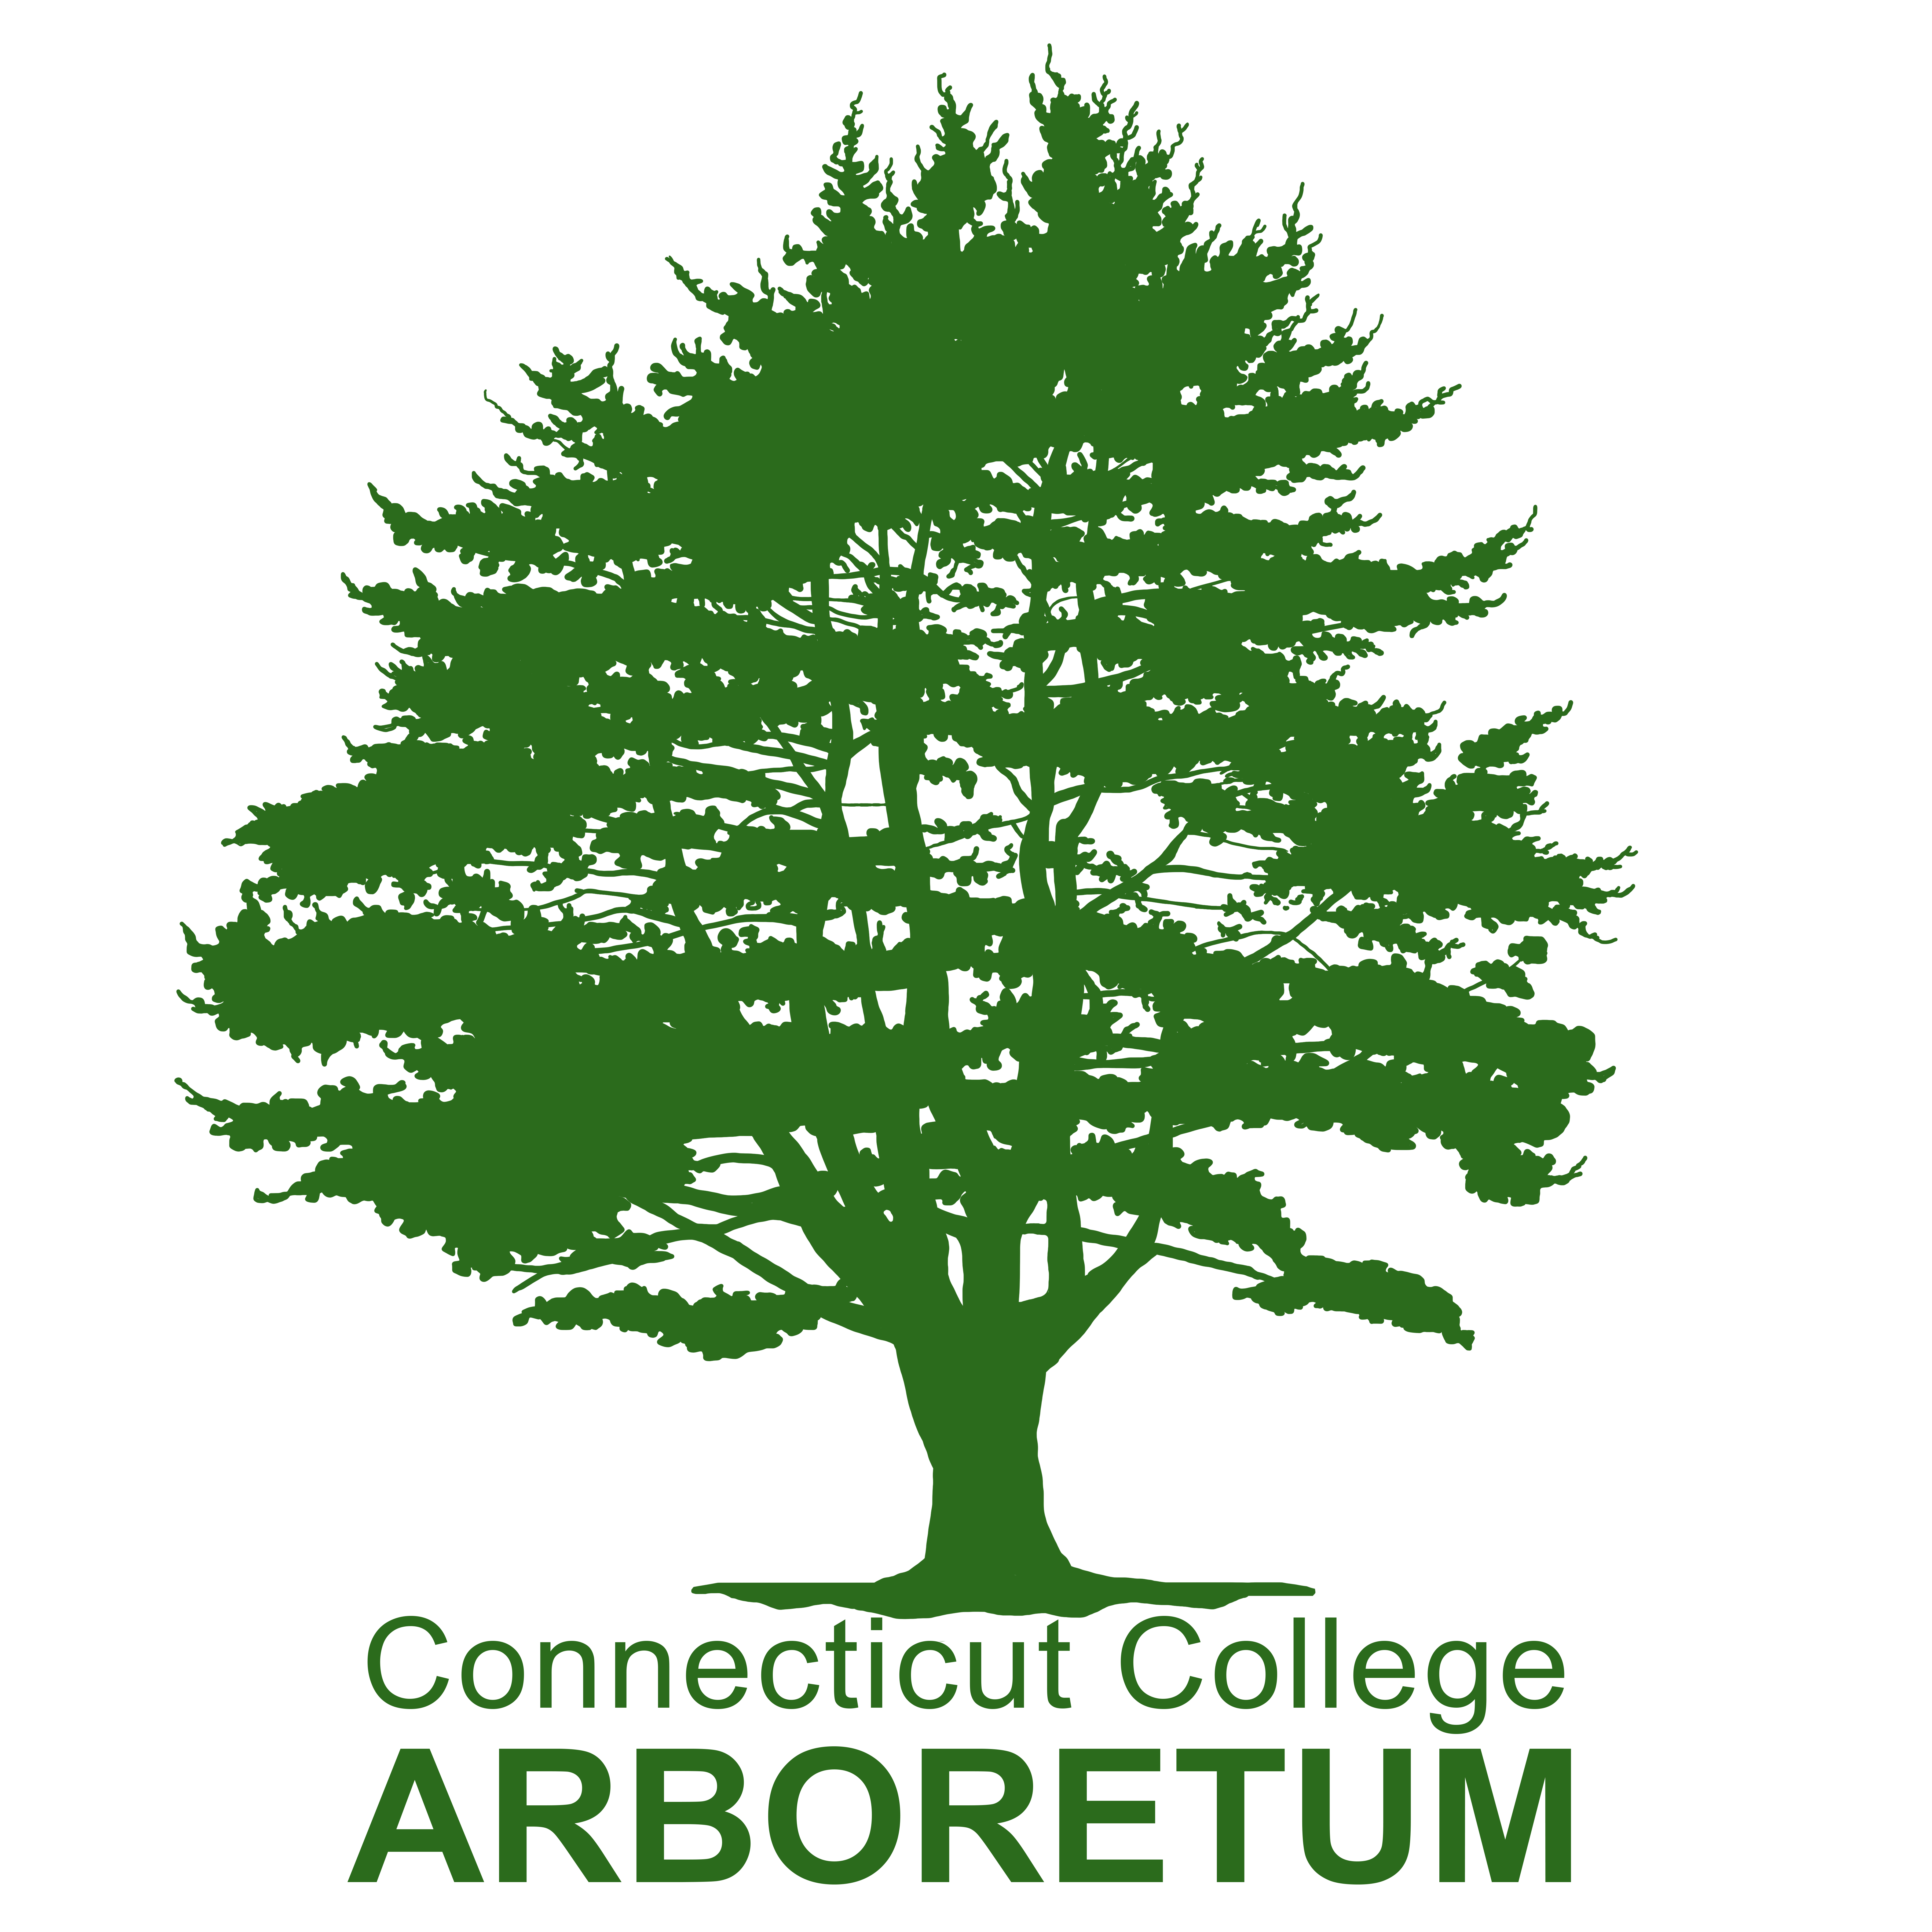 Connecticut College Arboretum Logo